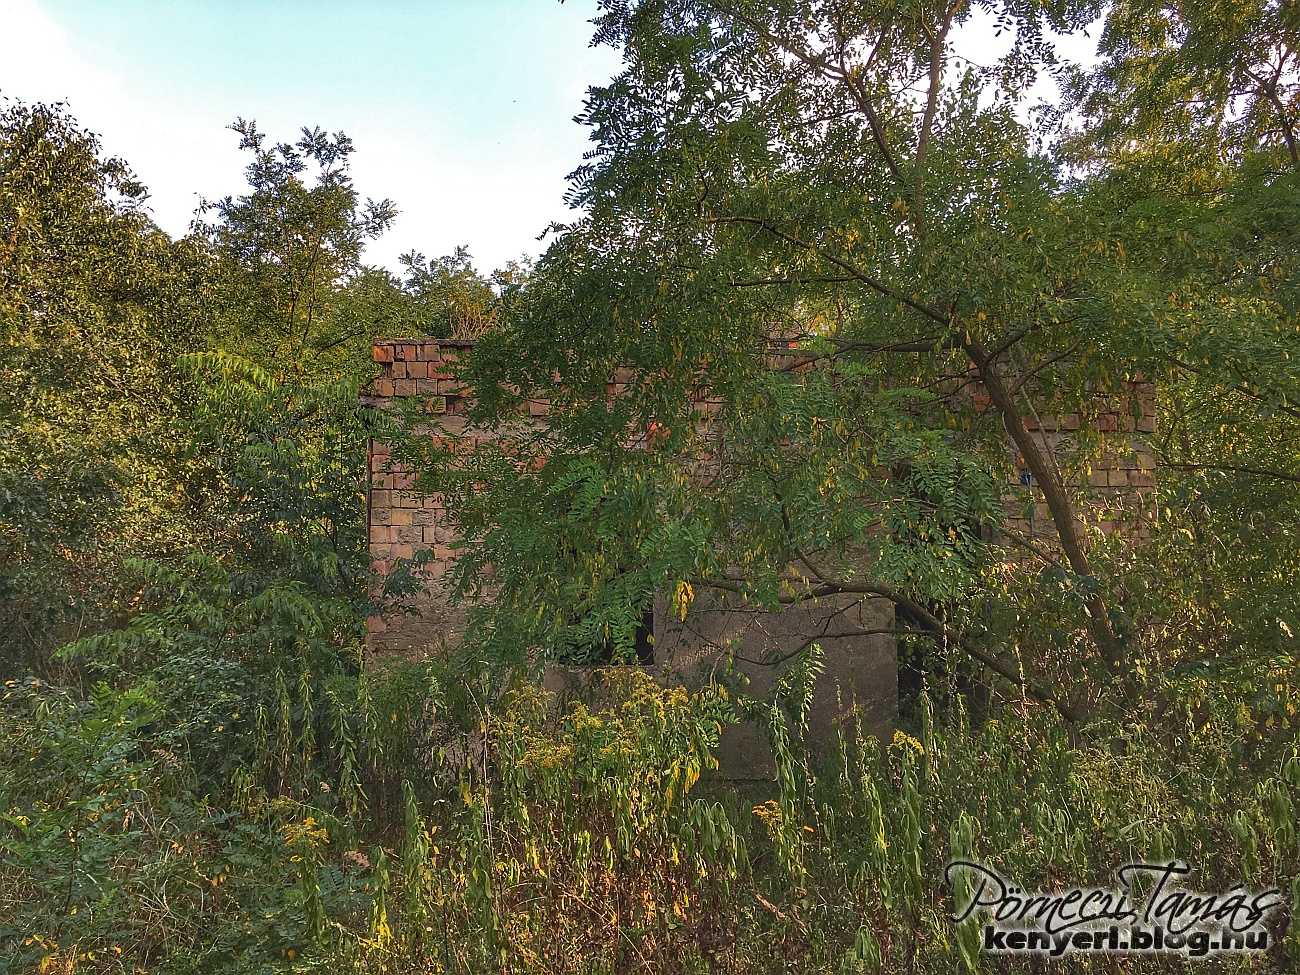 Az egyik egykori kapu közelében épült kis épület a fák takarásában. Talán az őrség egyik épülete lehetett. Tető már nincsen rajta. (2018 augusztusi fotóm)